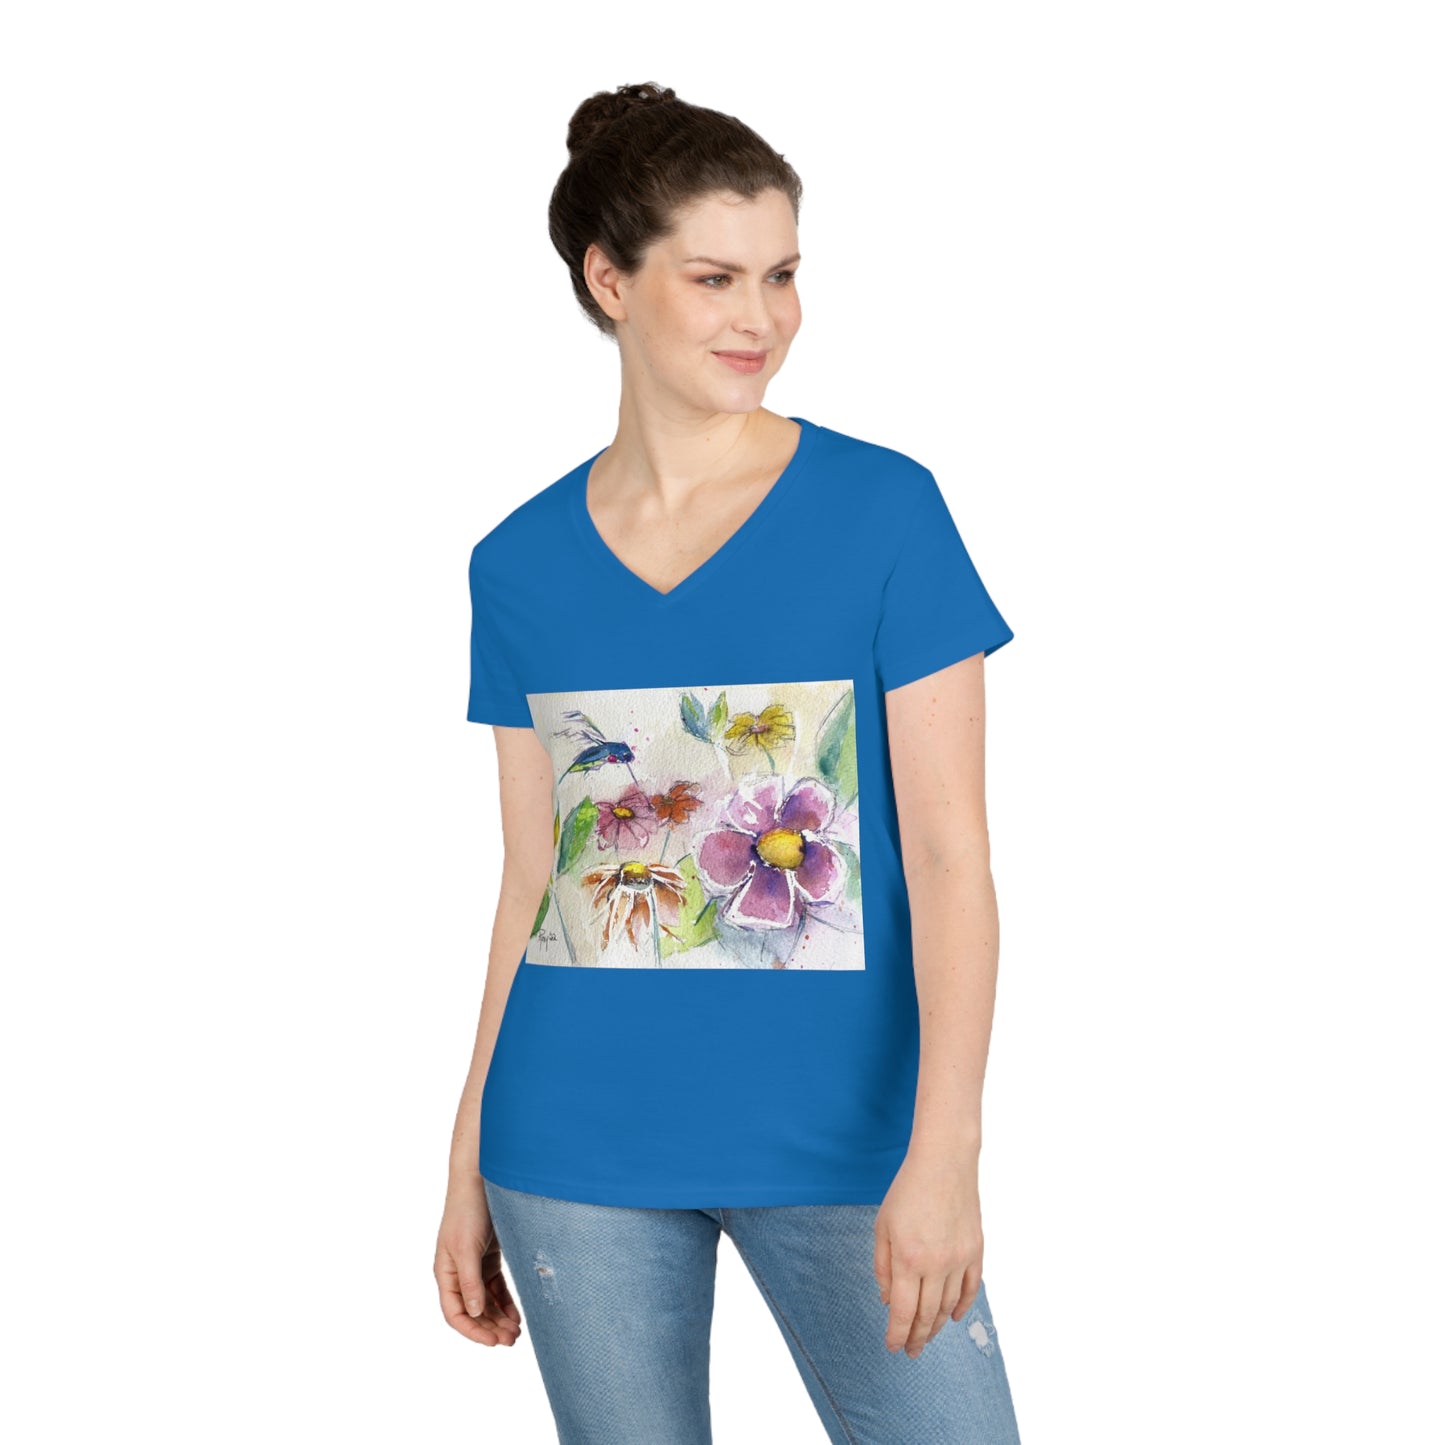 Camiseta con cuello en V para mujer Colibrí en el jardín de flores